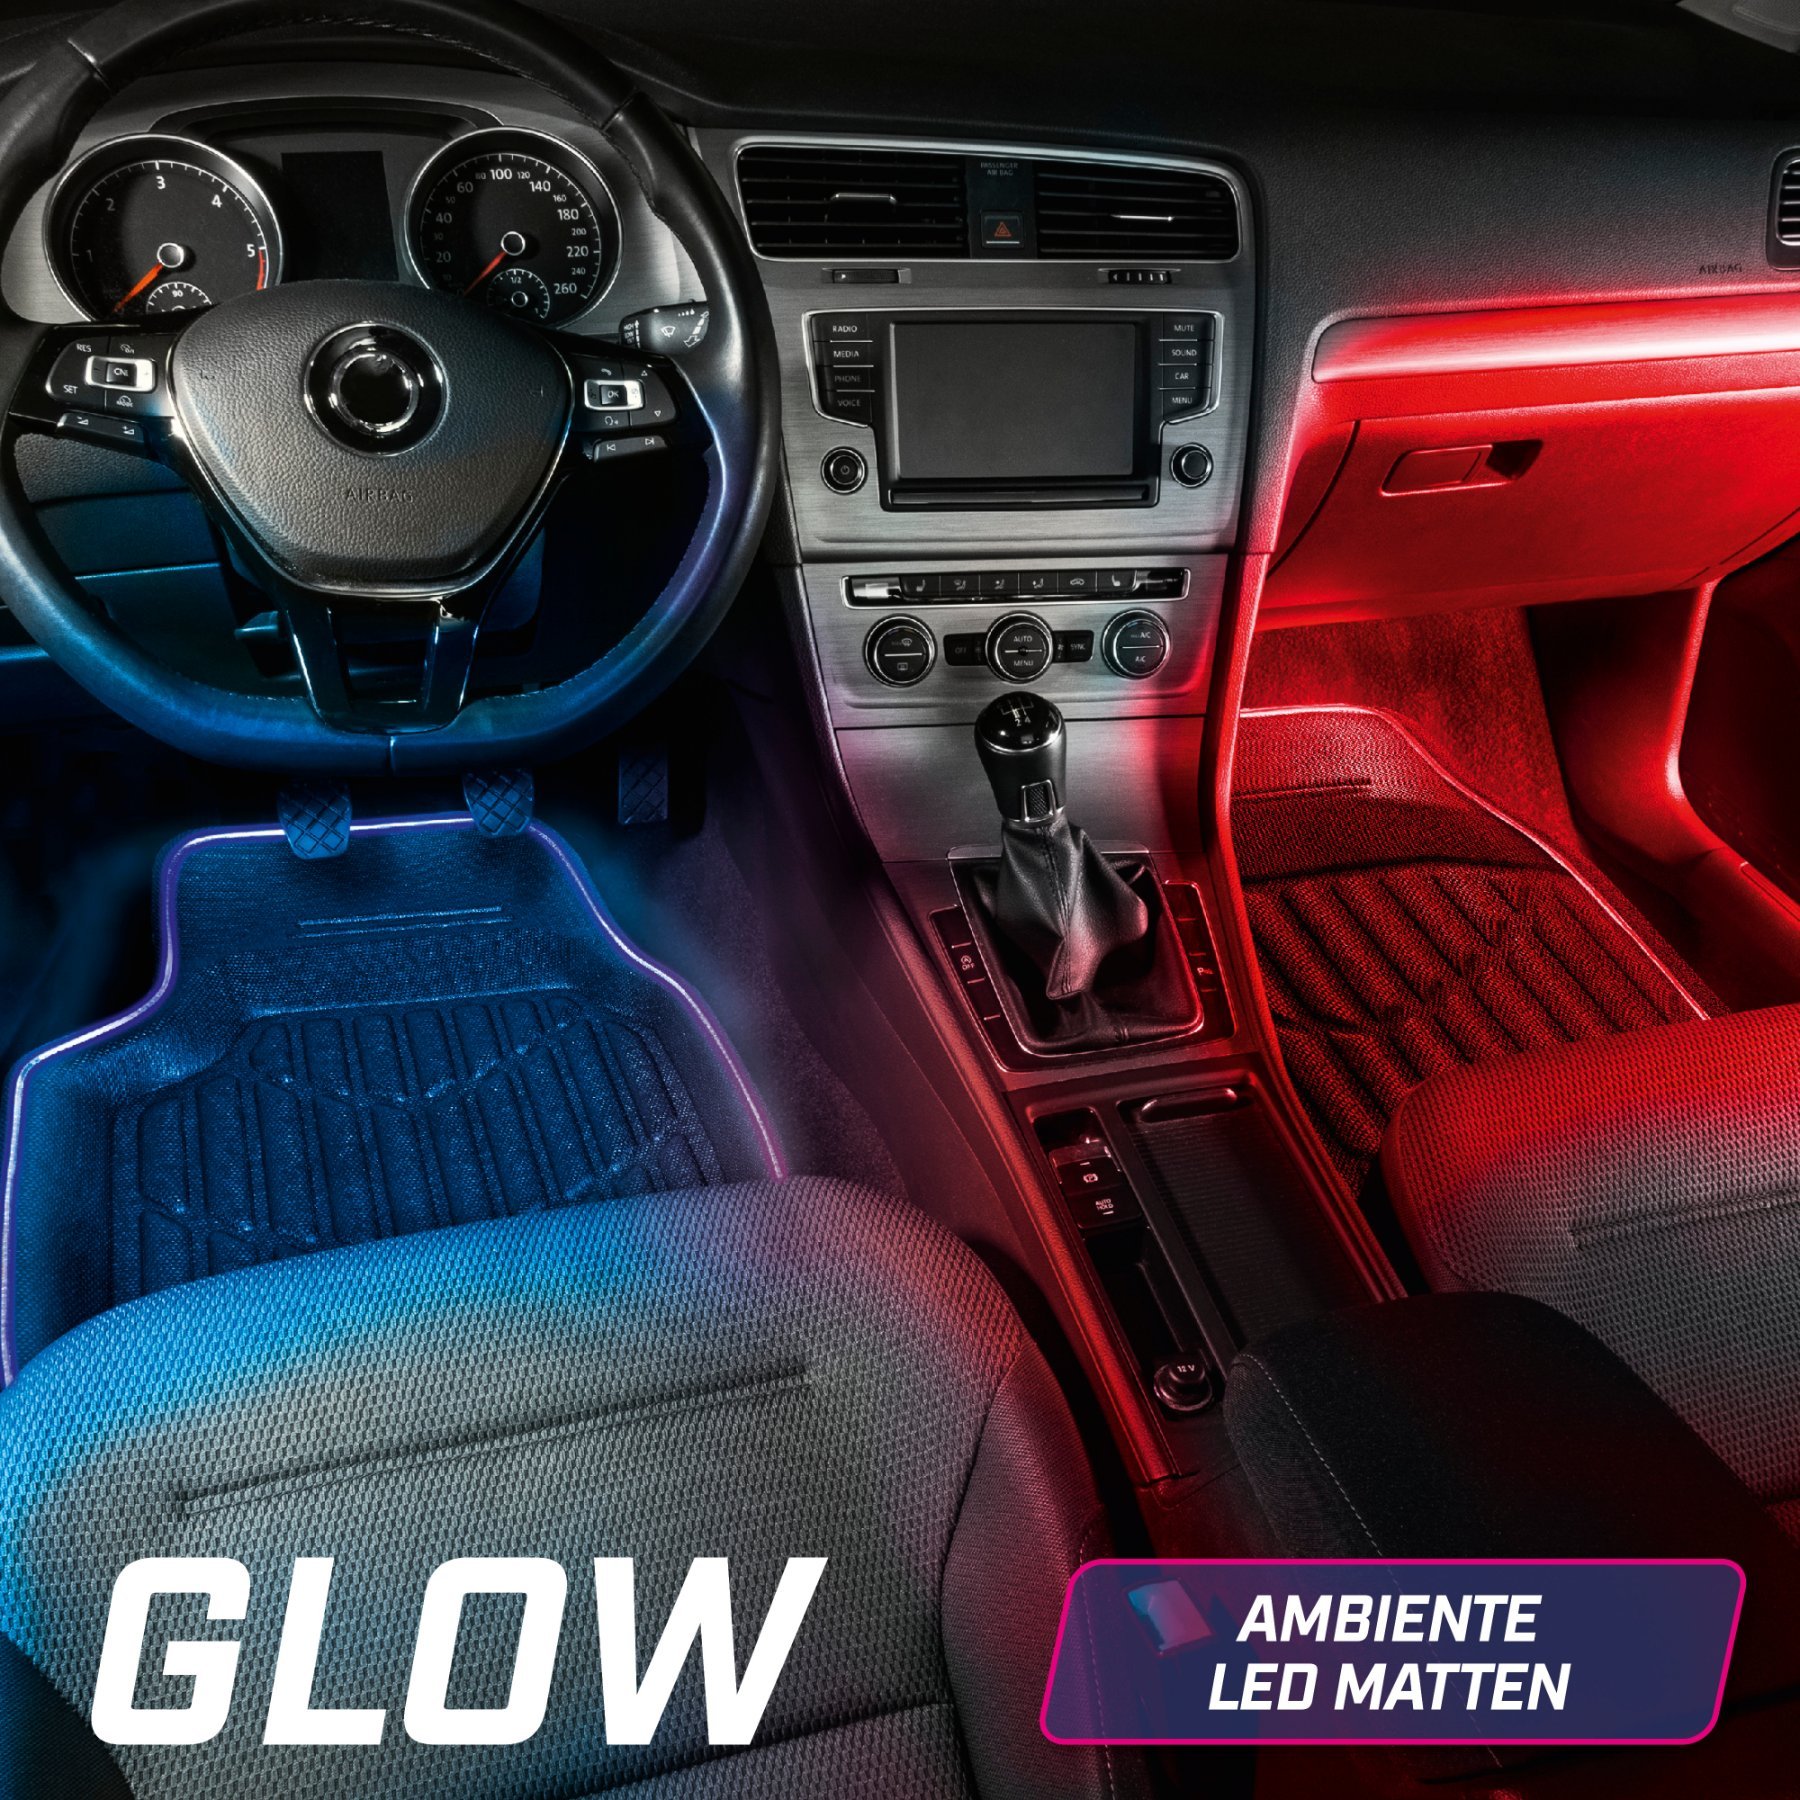 LED-Gummimatte Glow mit Farbauswahl, PKW-Fußmatte mit Lichtfunktionen und Fernbedienung